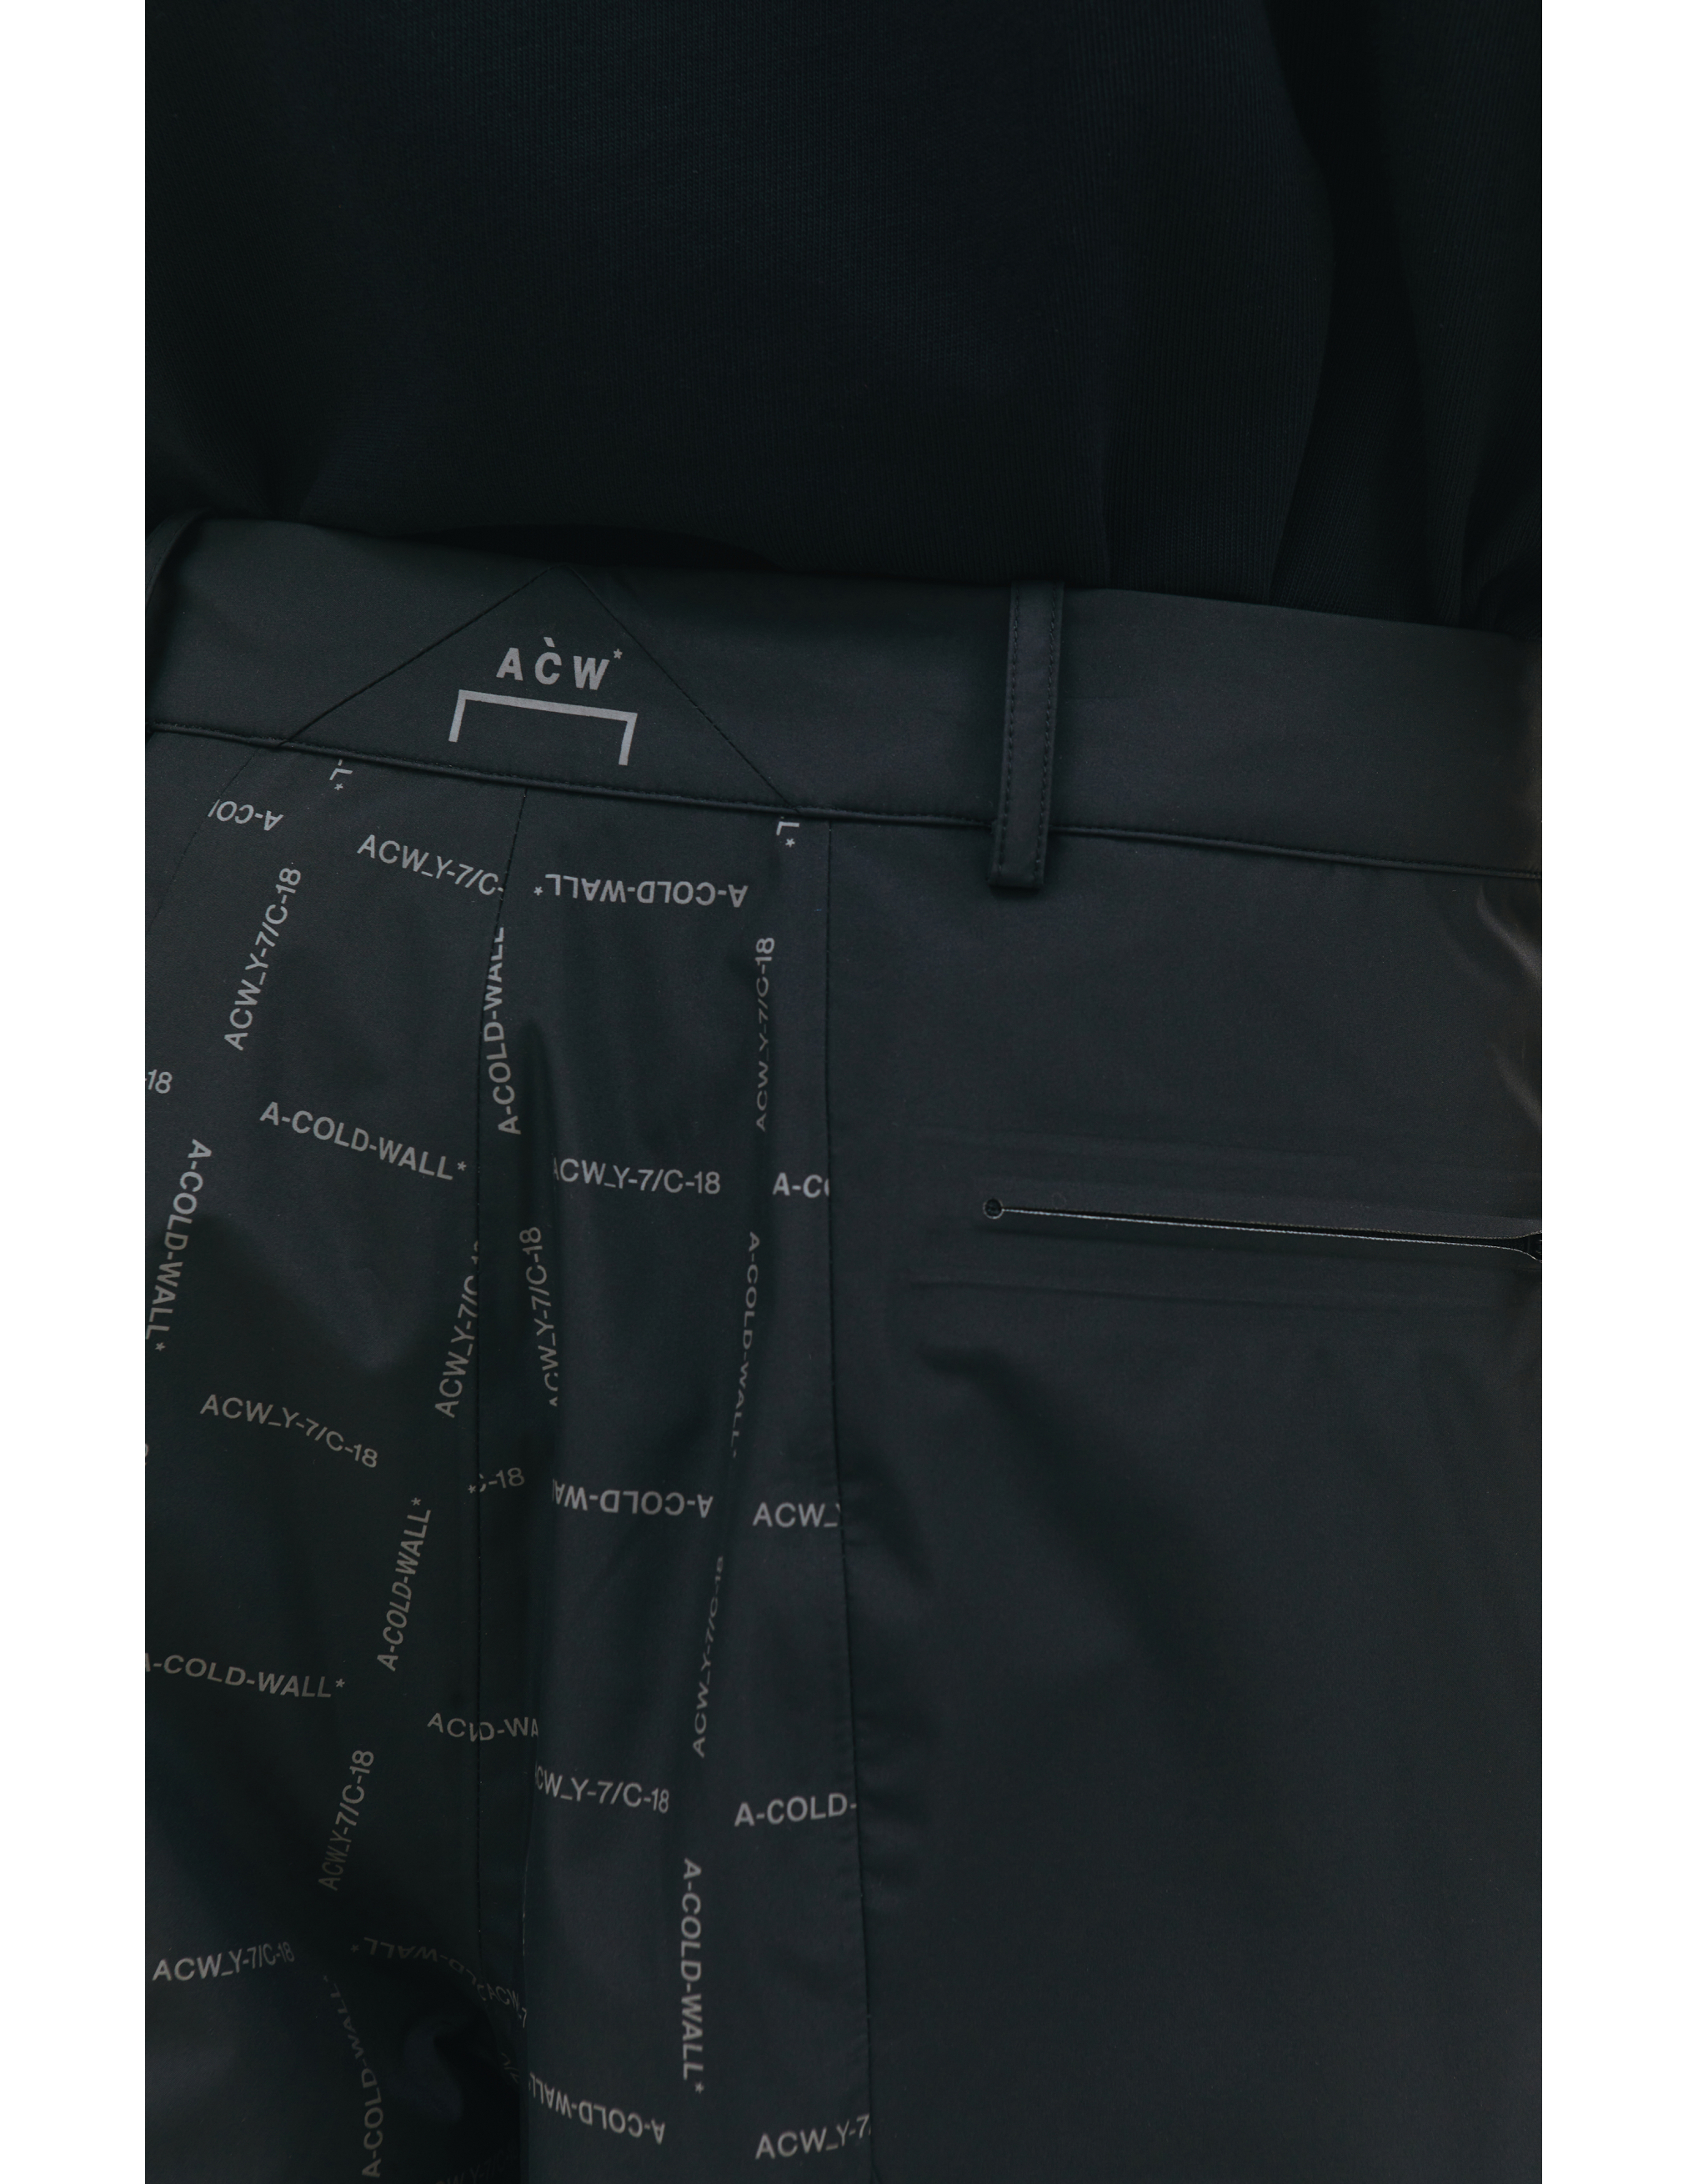 Черные брюки с монопринтом A-COLD-WALL* ACWMB176, размер 52;50;48 - фото 6